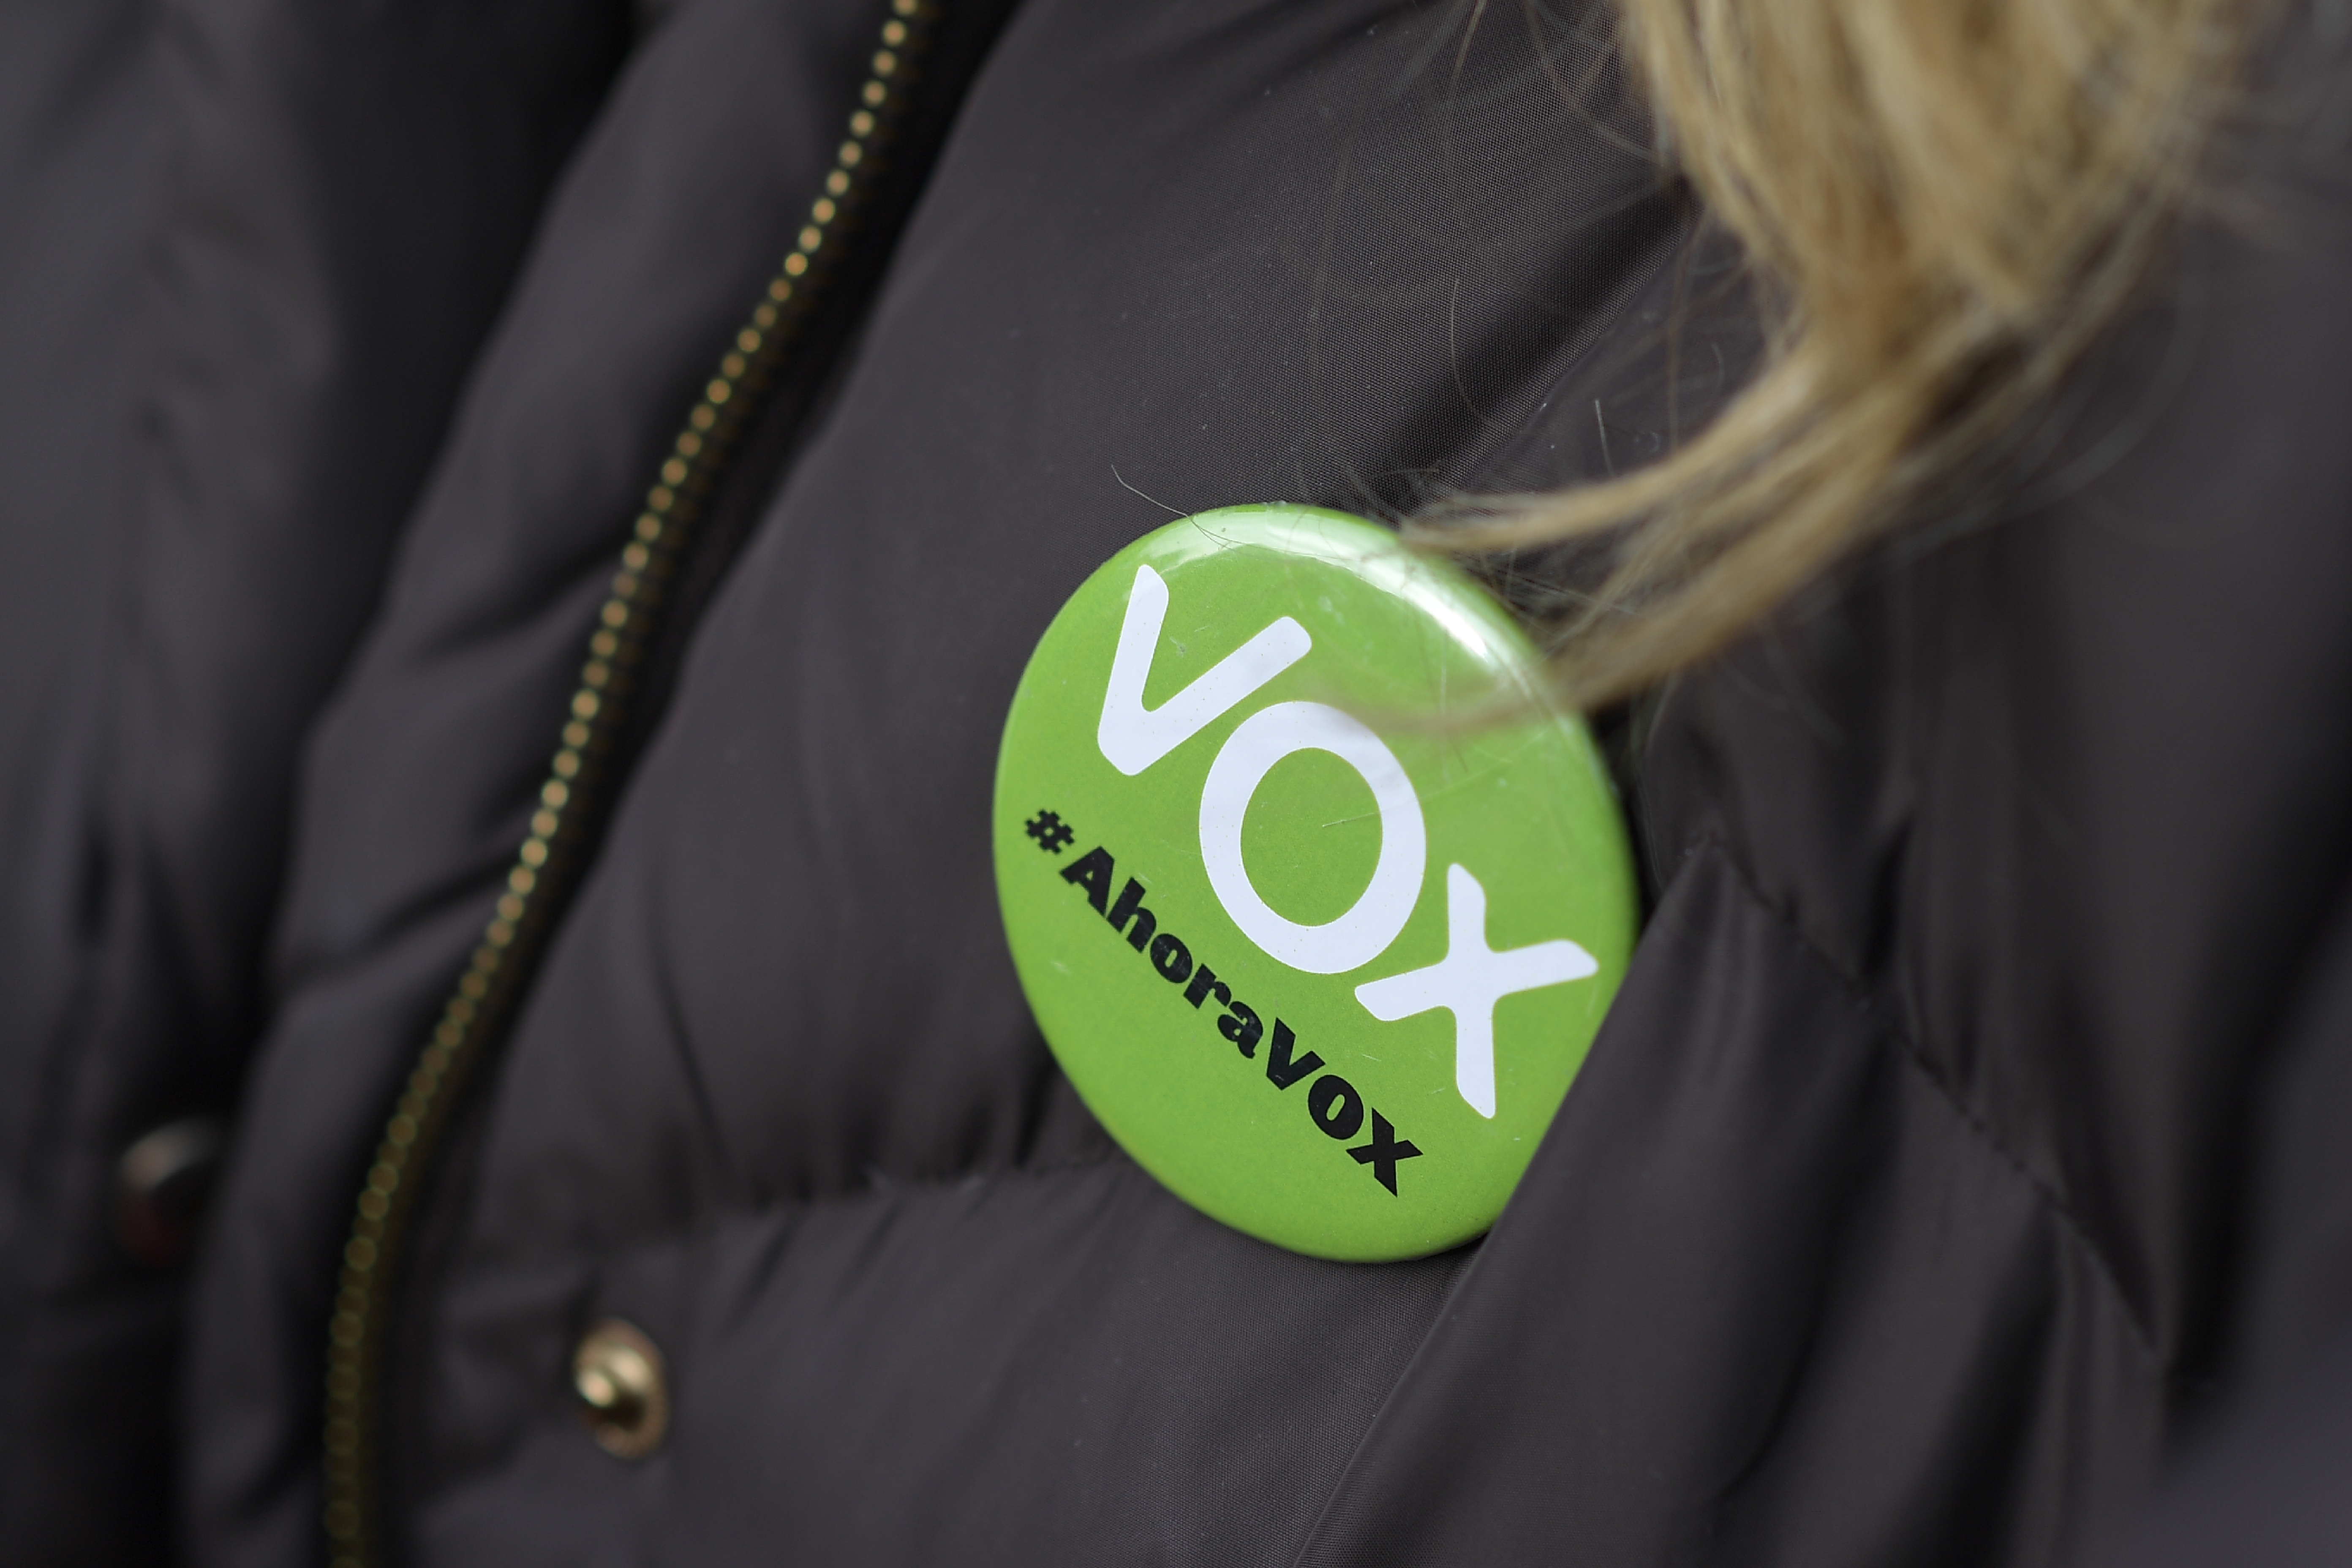 En España piden investigar al partido Vox por delito de odio contra migrantes